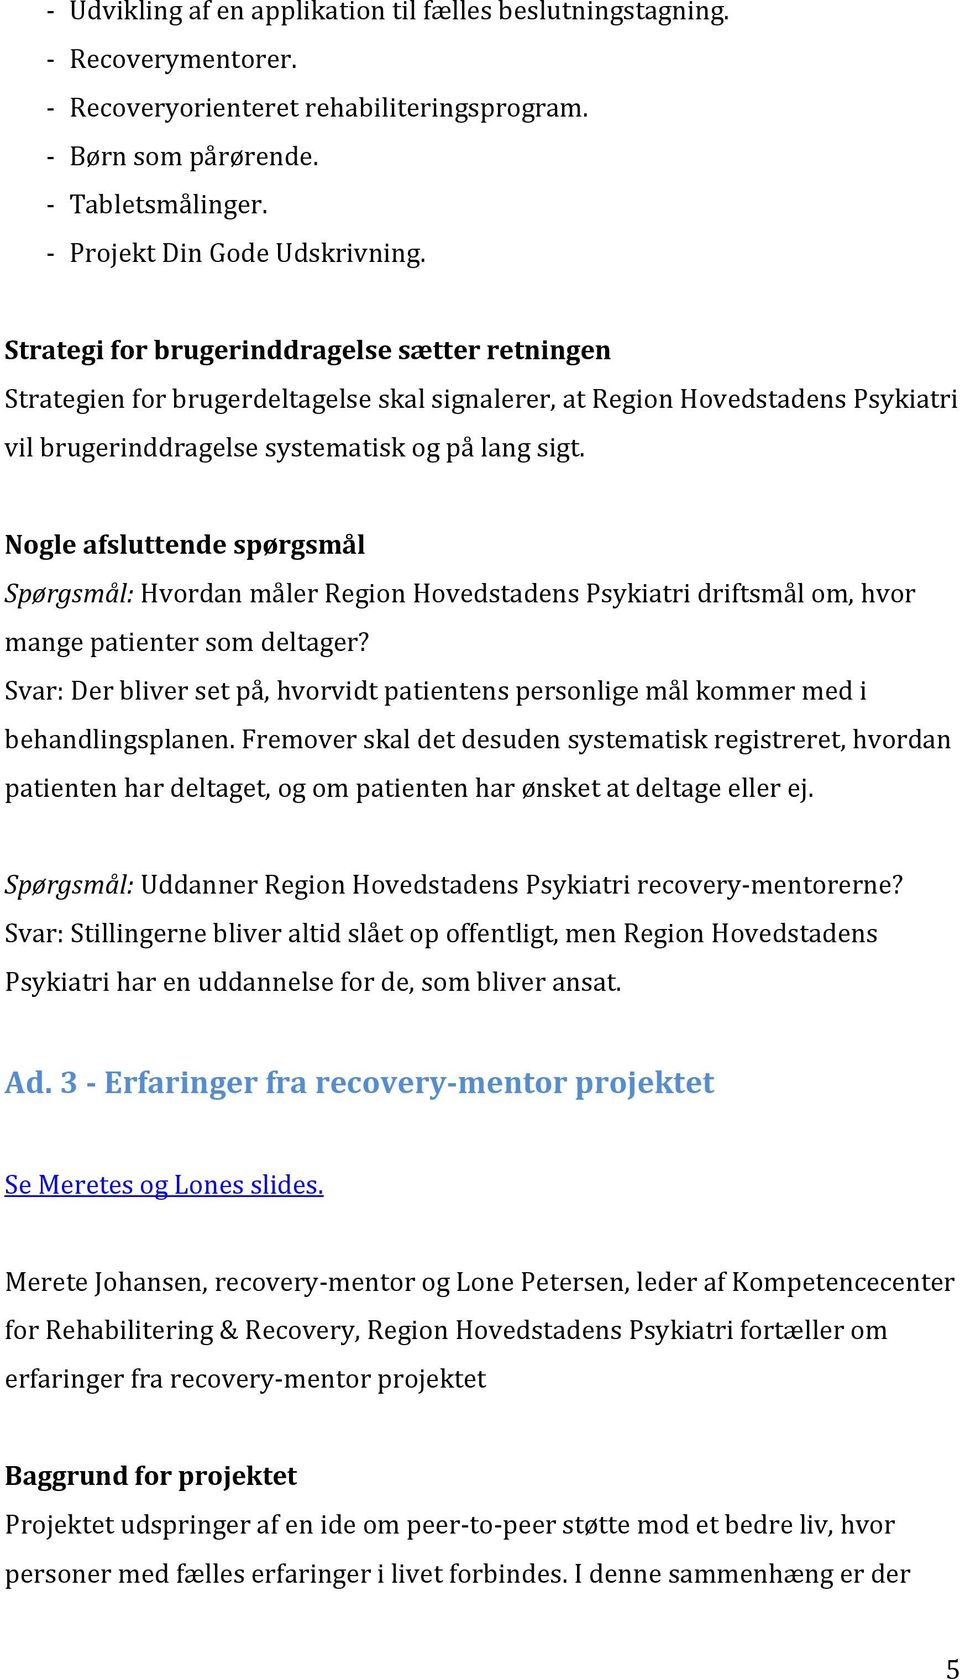 Strategi for brugerdeltagelse og Patienten partner. - PDF